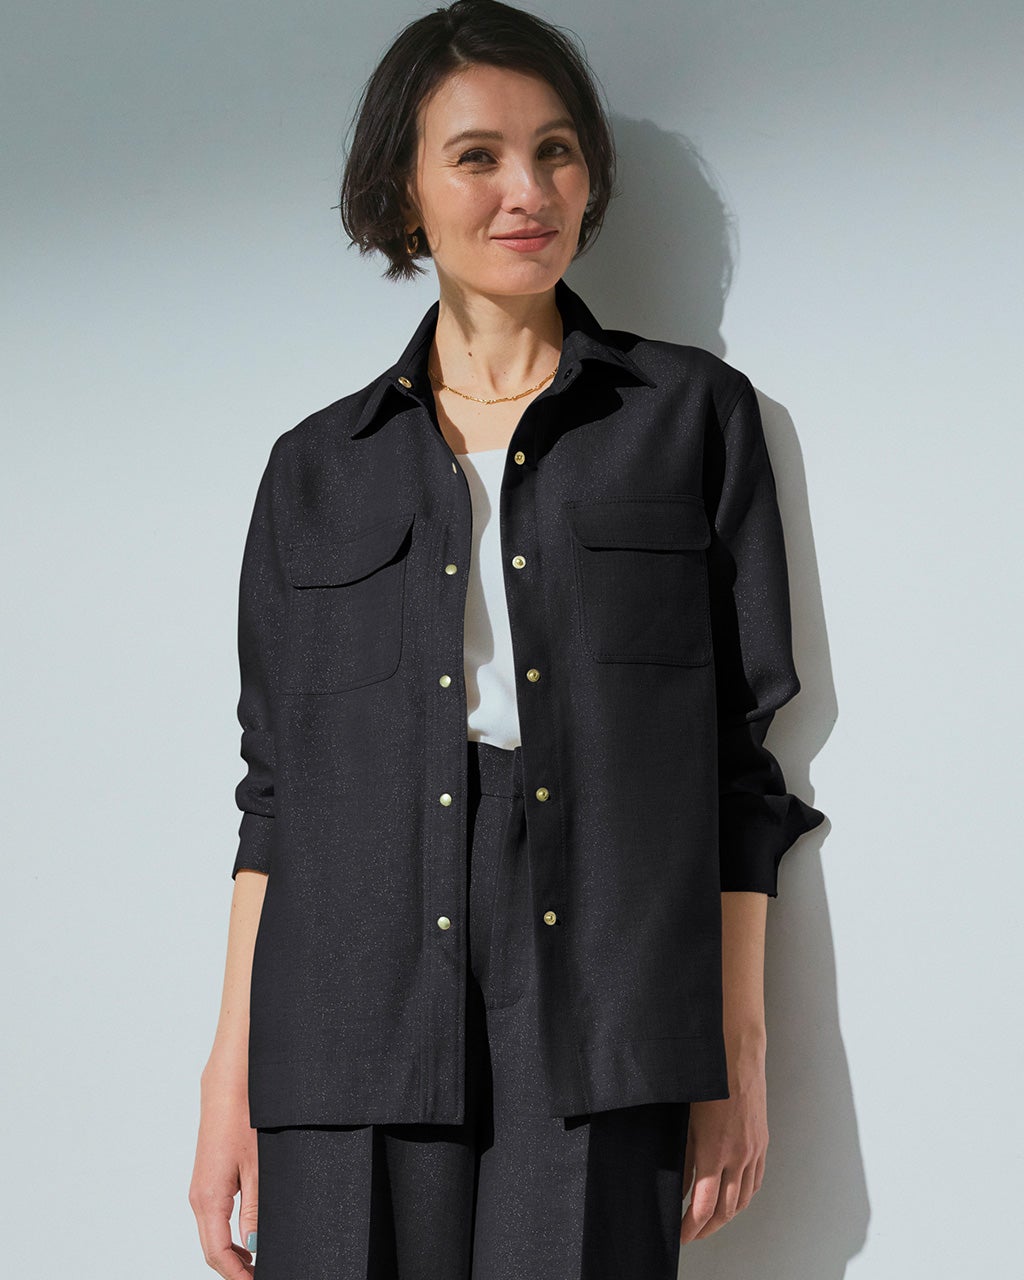 ラメリネン・シャツジャケット/40代50代からのレディースファッション 